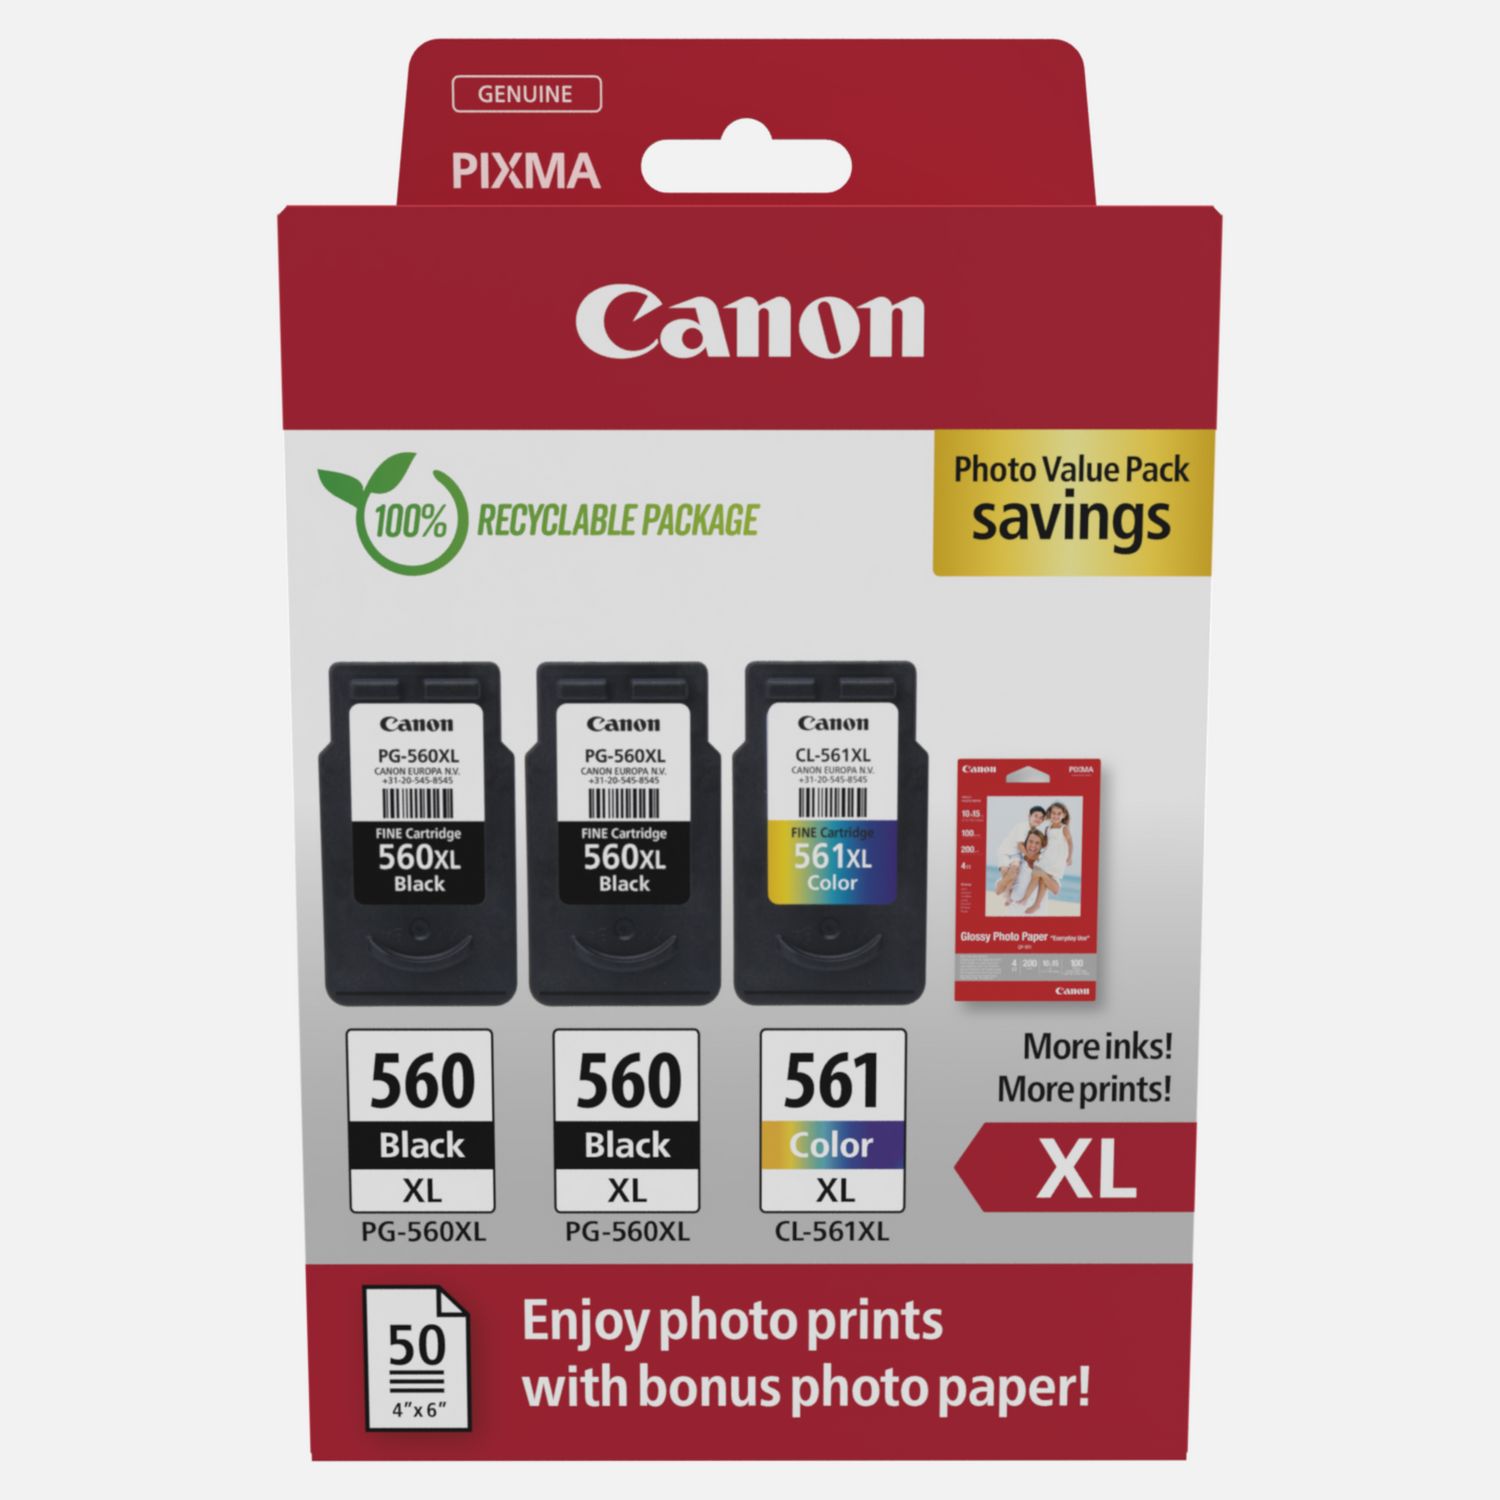 Paquet à prix réduit cartouches d'encre PG-560XL x2/CL-561XL + papier photo Canon